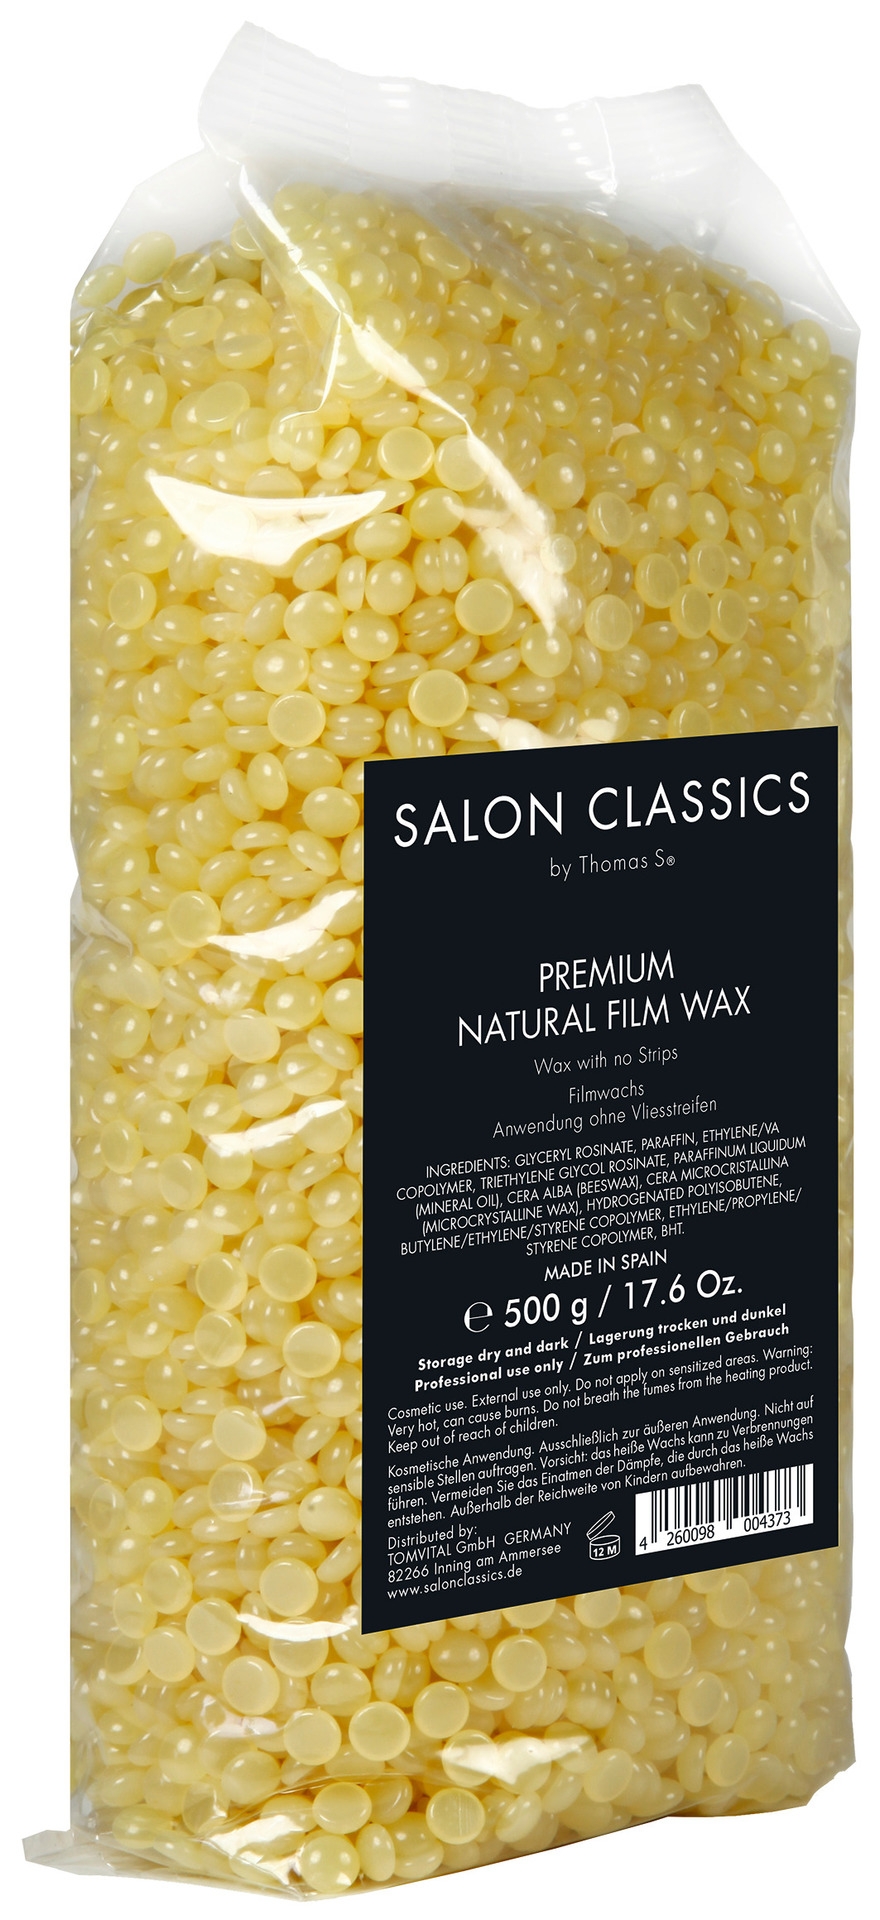 Salon Classics Natural Film Wax Pearls | 500 g (Staffelpreis)